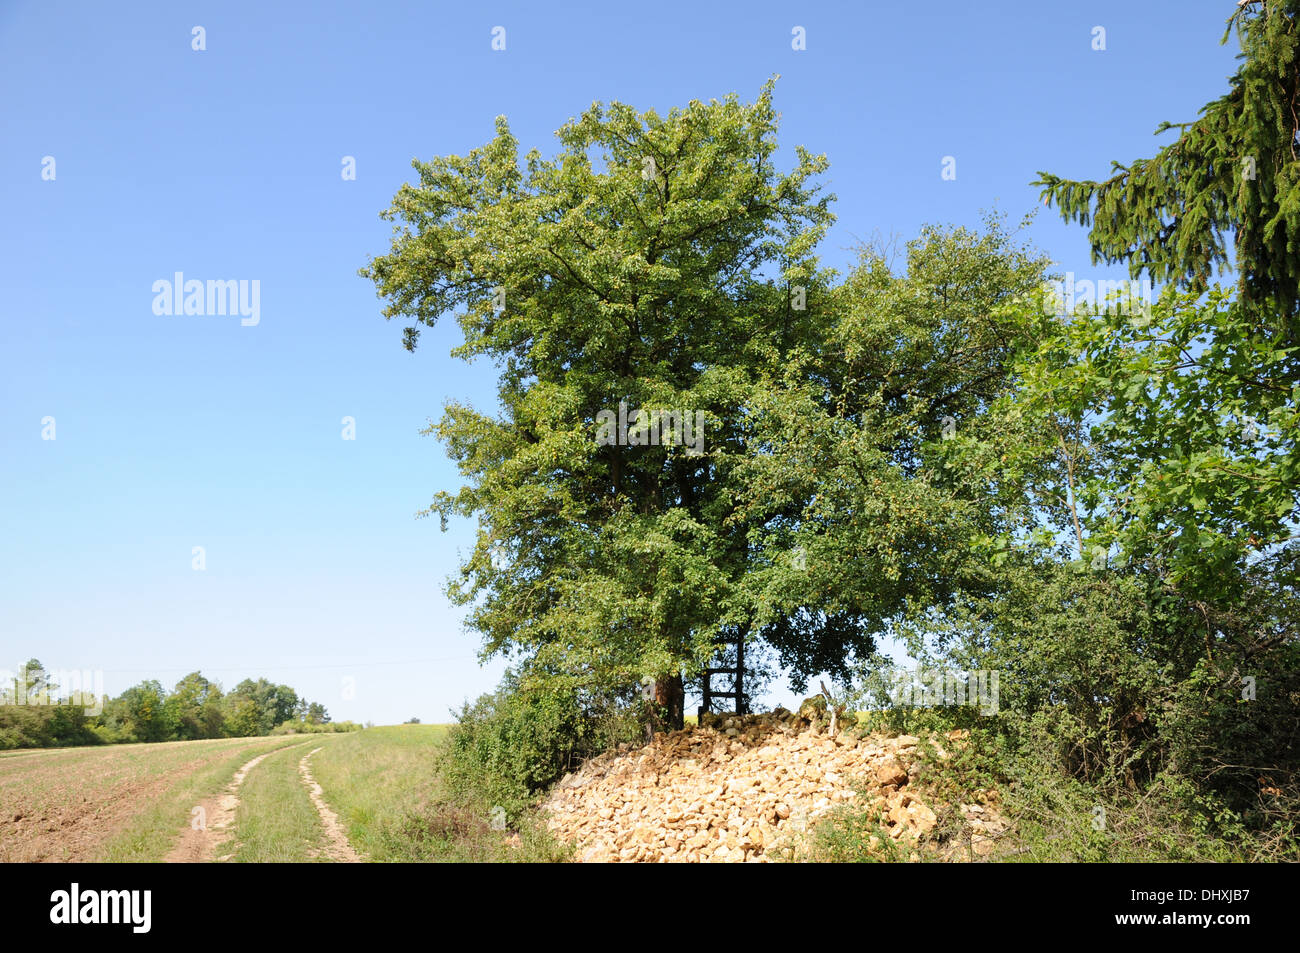 Wild pear tree Stock Photo